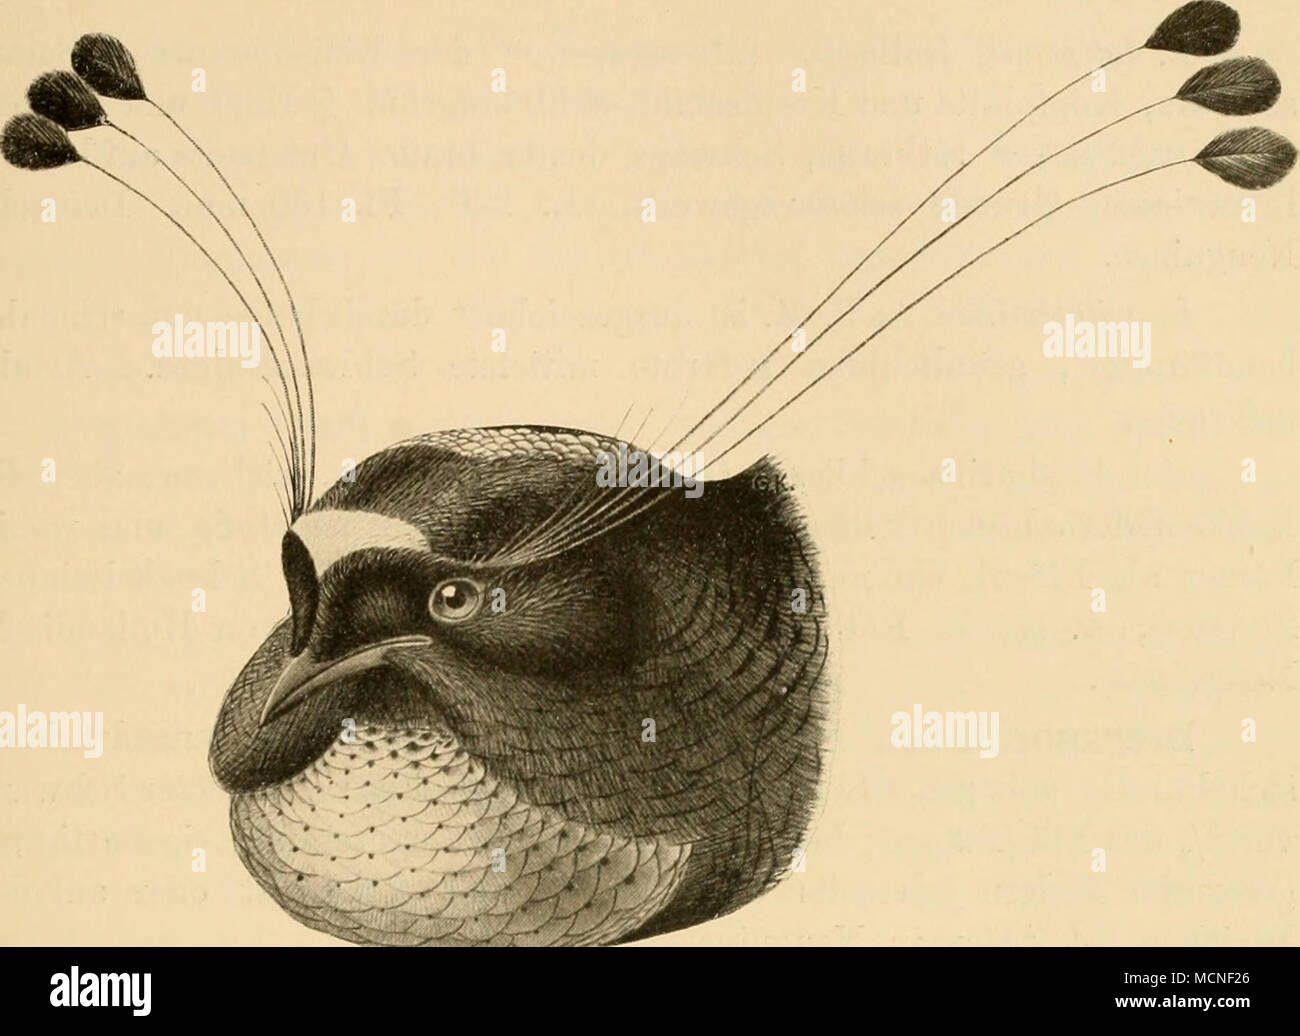 . •Ig. 169. P. lawesi ]ains. Dem älmlich Vorigen, aber Seliwanz gerade veloce. 2 dem von selilata ähnlich, aher rostfarhen Unterseite mit in Wellen, Belgium.Wellen scdiwarzen- binden. L. 280, Fl. 150 nun. Owen-.Stanley- gebirge in Neuguinea. P. wahiiesi Rothsch. ("Sup])ononia" der Eingeborenen). "Schwanz stufig, viel länger als Flügel. Stirnwulstbronze- braun glänzend, sinist in der Färbung dem gleichend Vorigen. L. 400, Fl. 155 mm. Süd- (istliches Deutsch-Neuguinea (oberer Wariafluss). Lophorina Vieill. Beim (/ lange, starre jSTackenfedern, einen gabel- förmig ausgeschnittenen oder abgerundeten, den Rücken Foto Stock